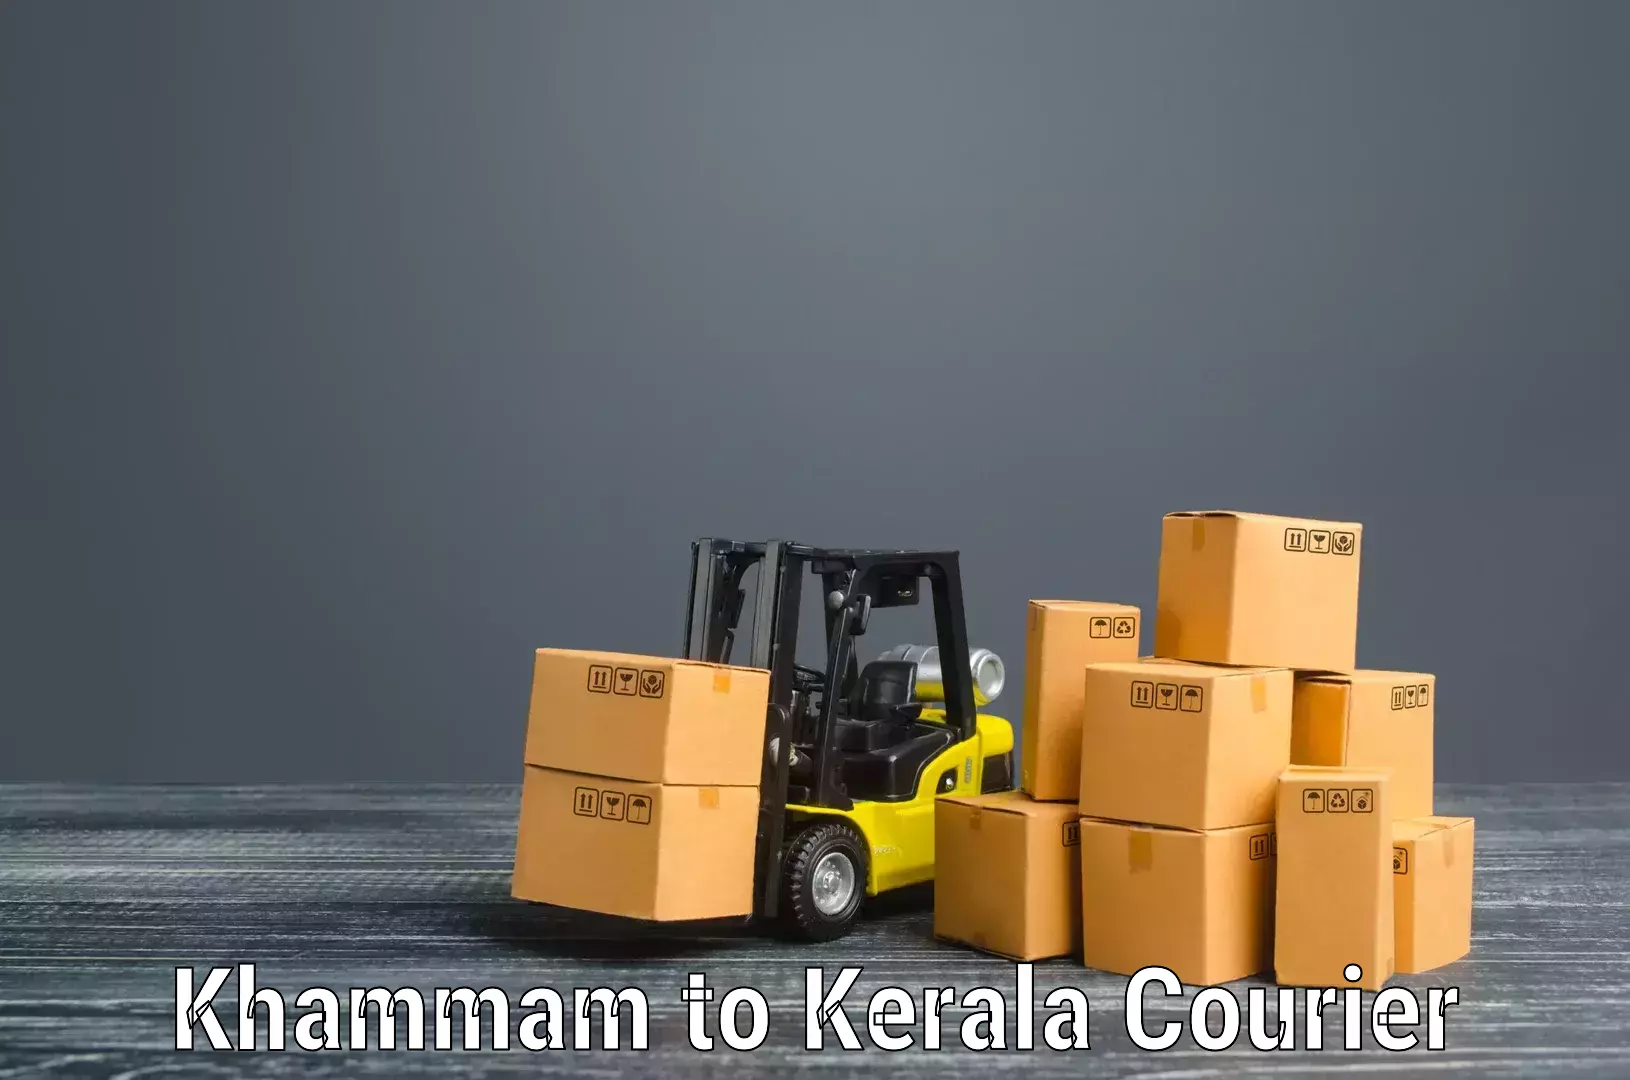 Efficient packing and moving Khammam to Kakkayam